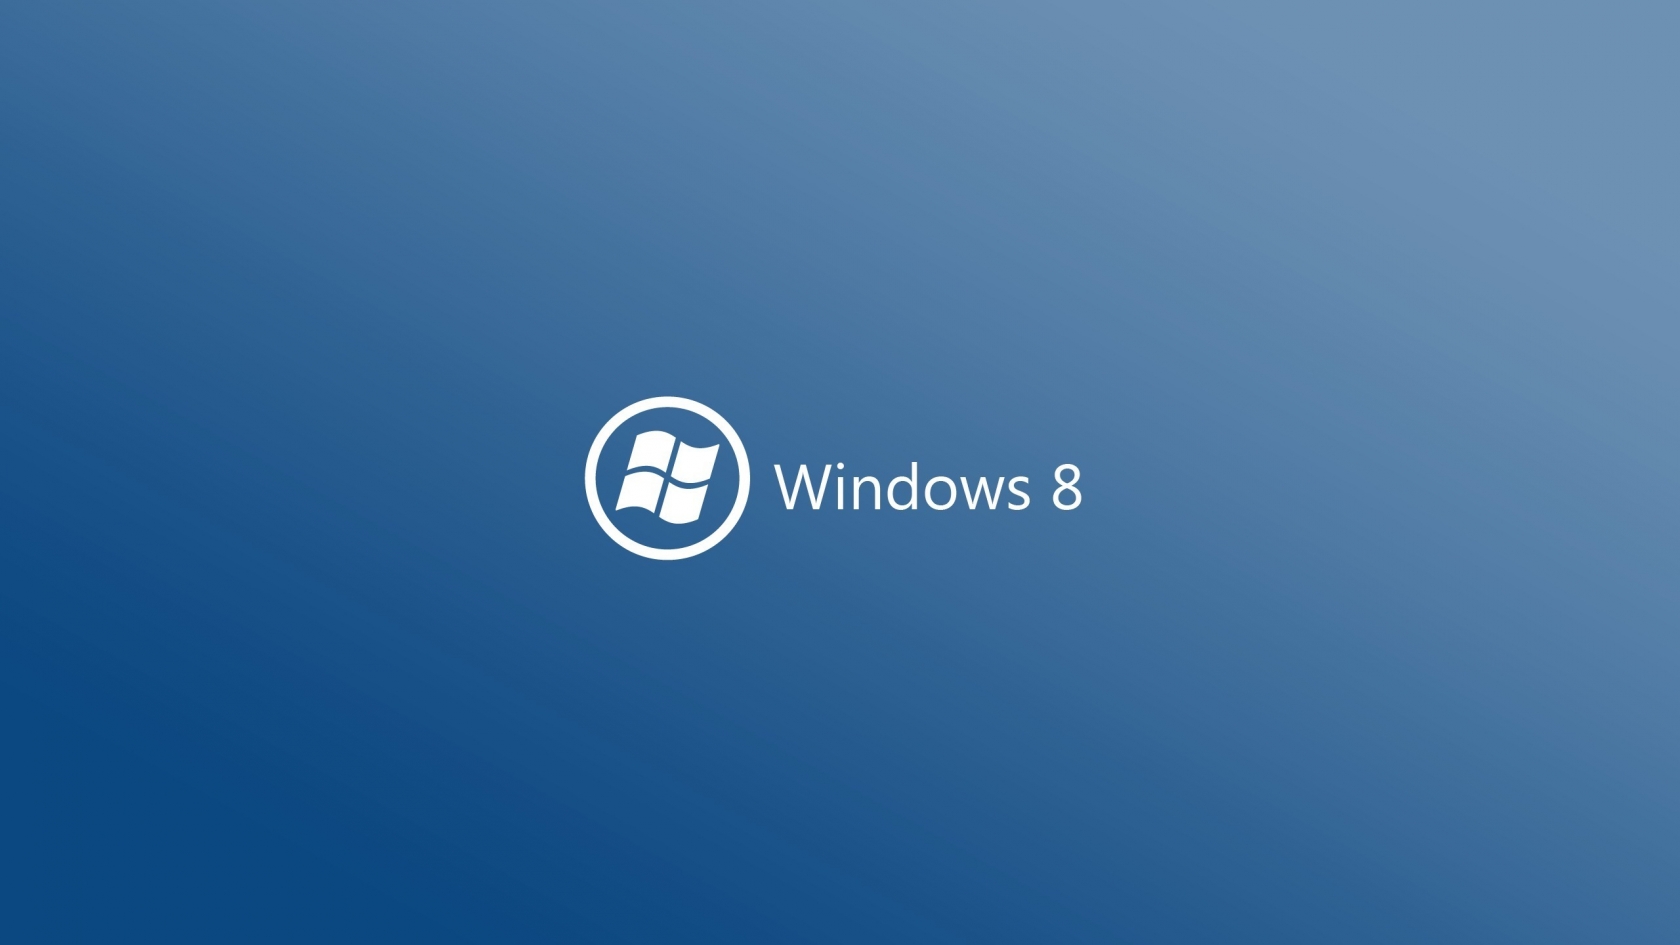 Windows 8 Logo for 1680 x 945 HDTV resolution